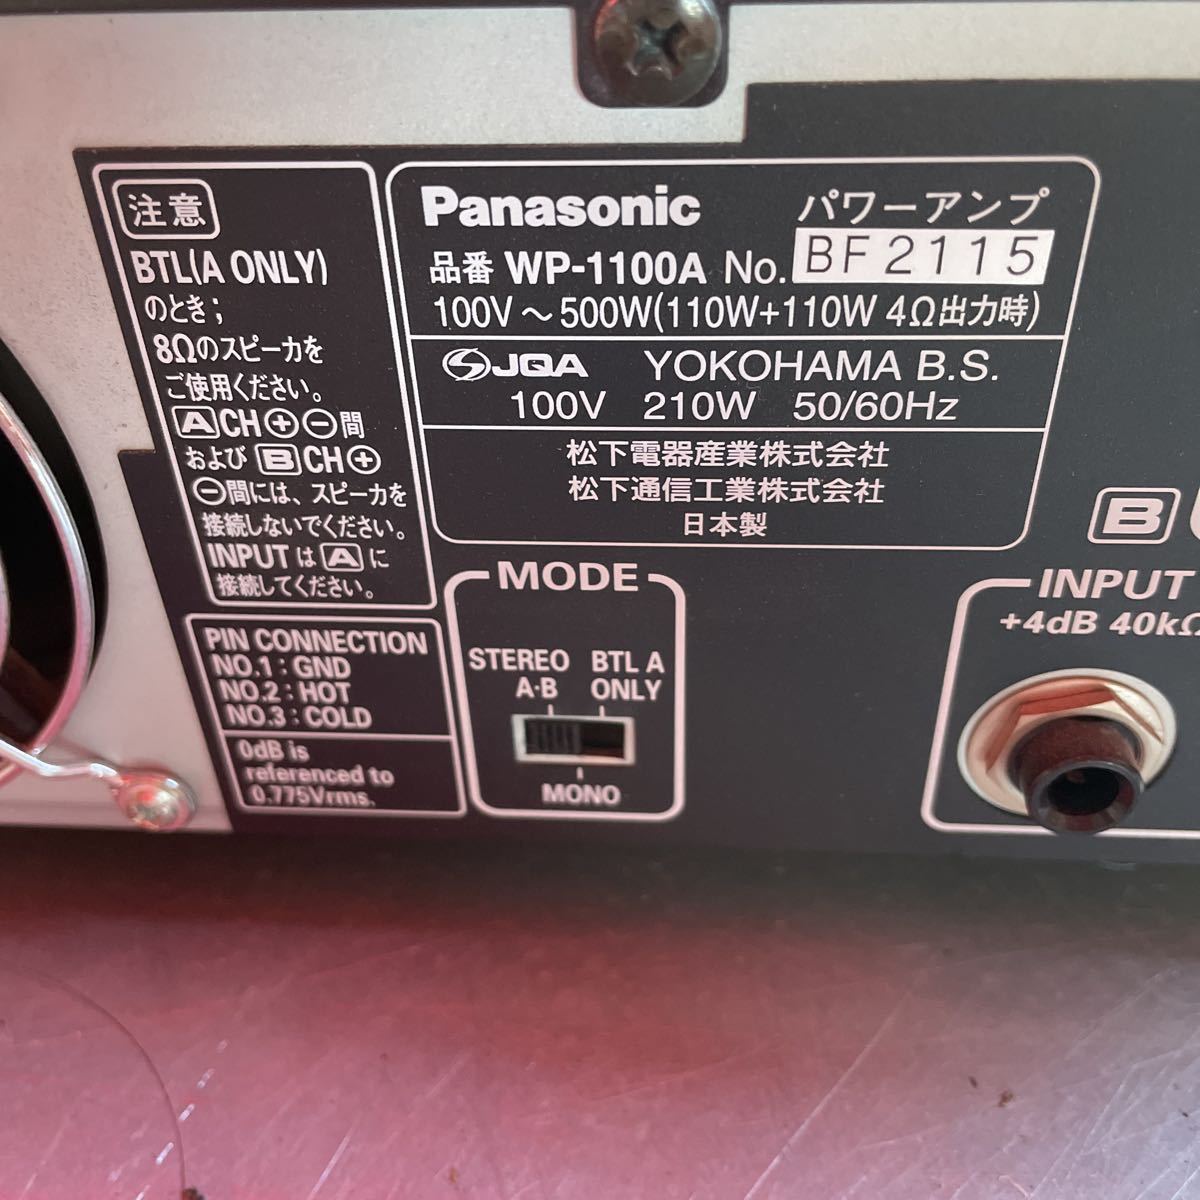 RAMSA WP-1100A パナソニック Panasonic パワーアンプ(110W+110W) NO.646_画像5